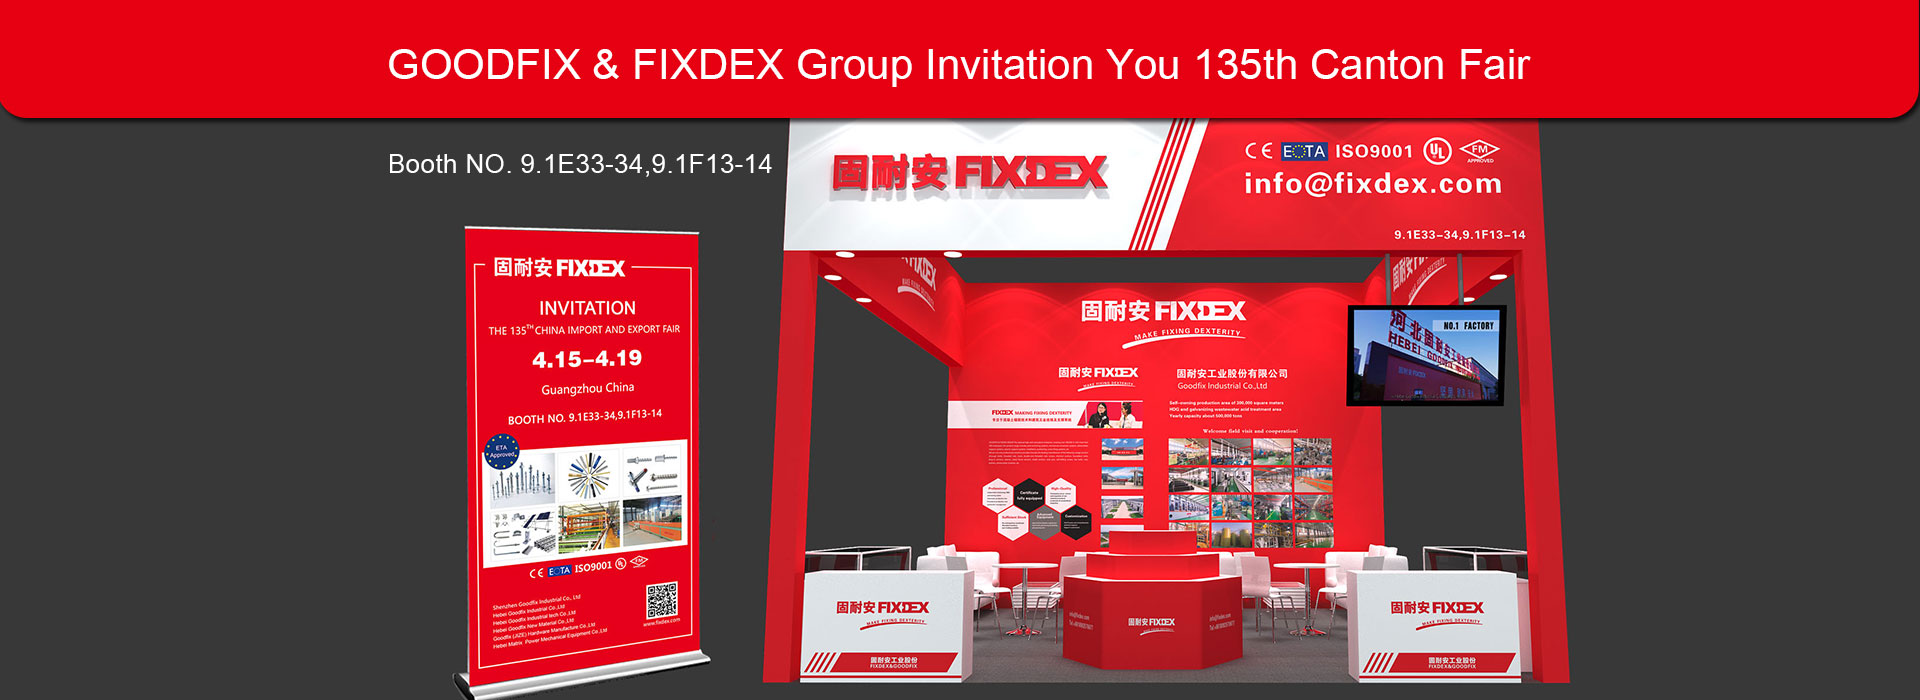 GOODFIX-&-FIXDEX-Group-Invitation-You-135th-Canton-Fair